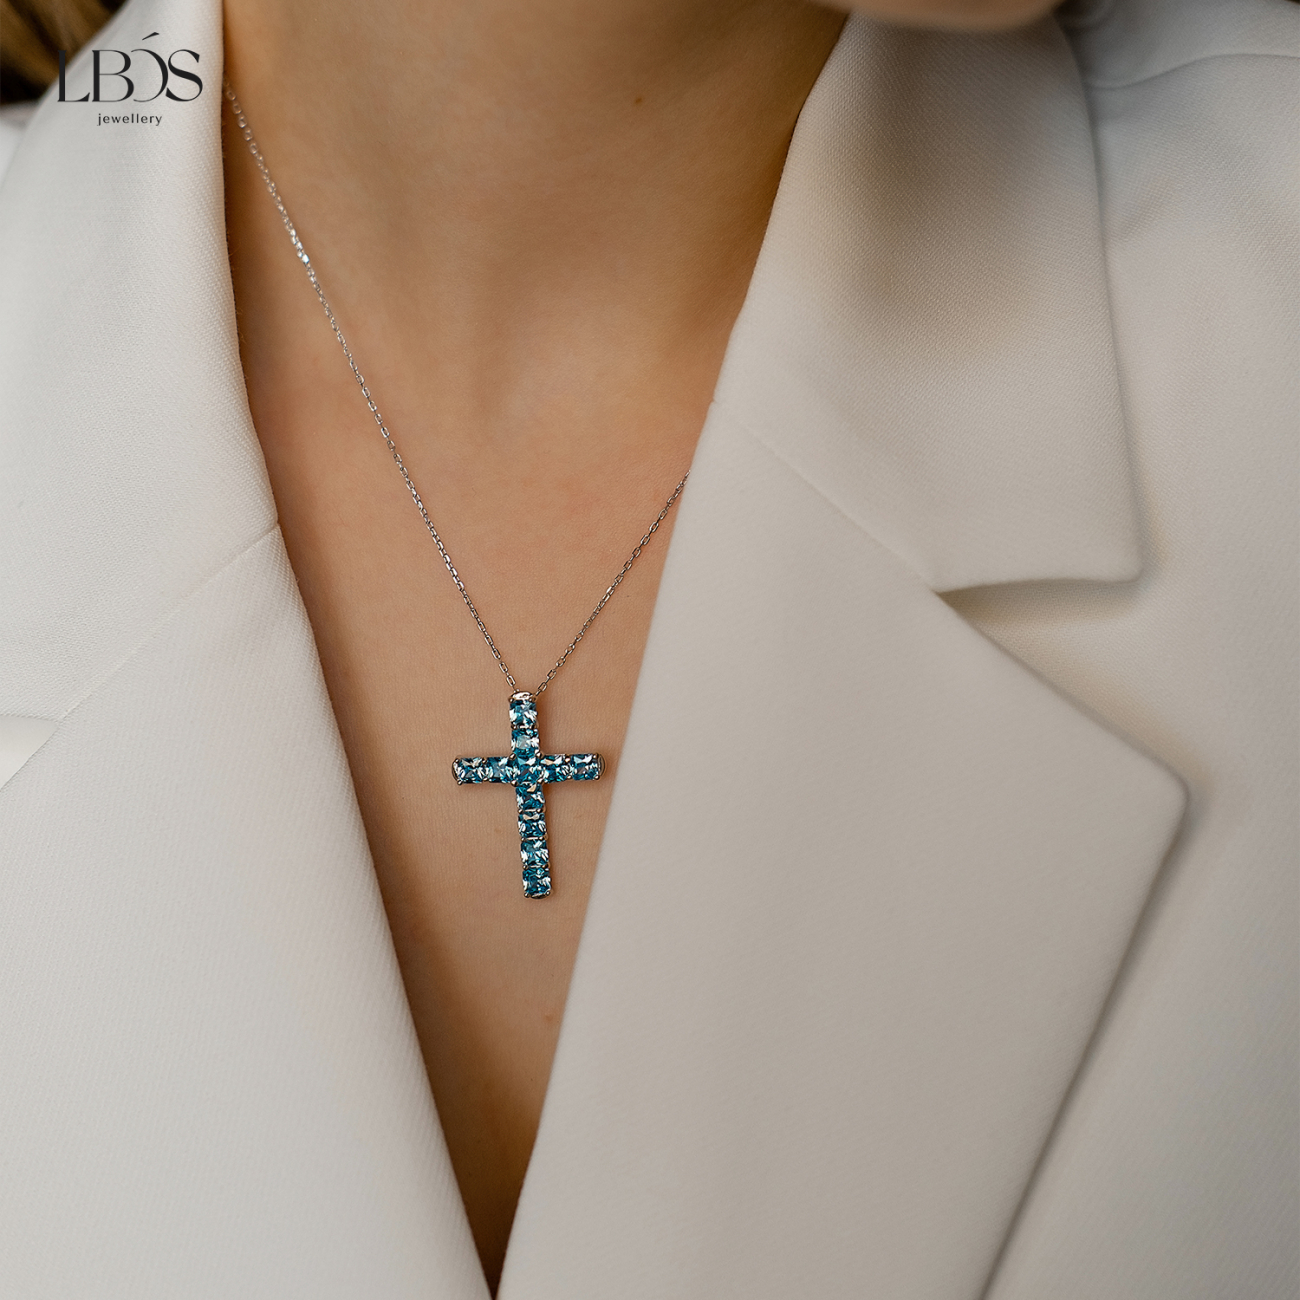 Серебряное колье 925 пробы Крест с квадратными камнями голубой